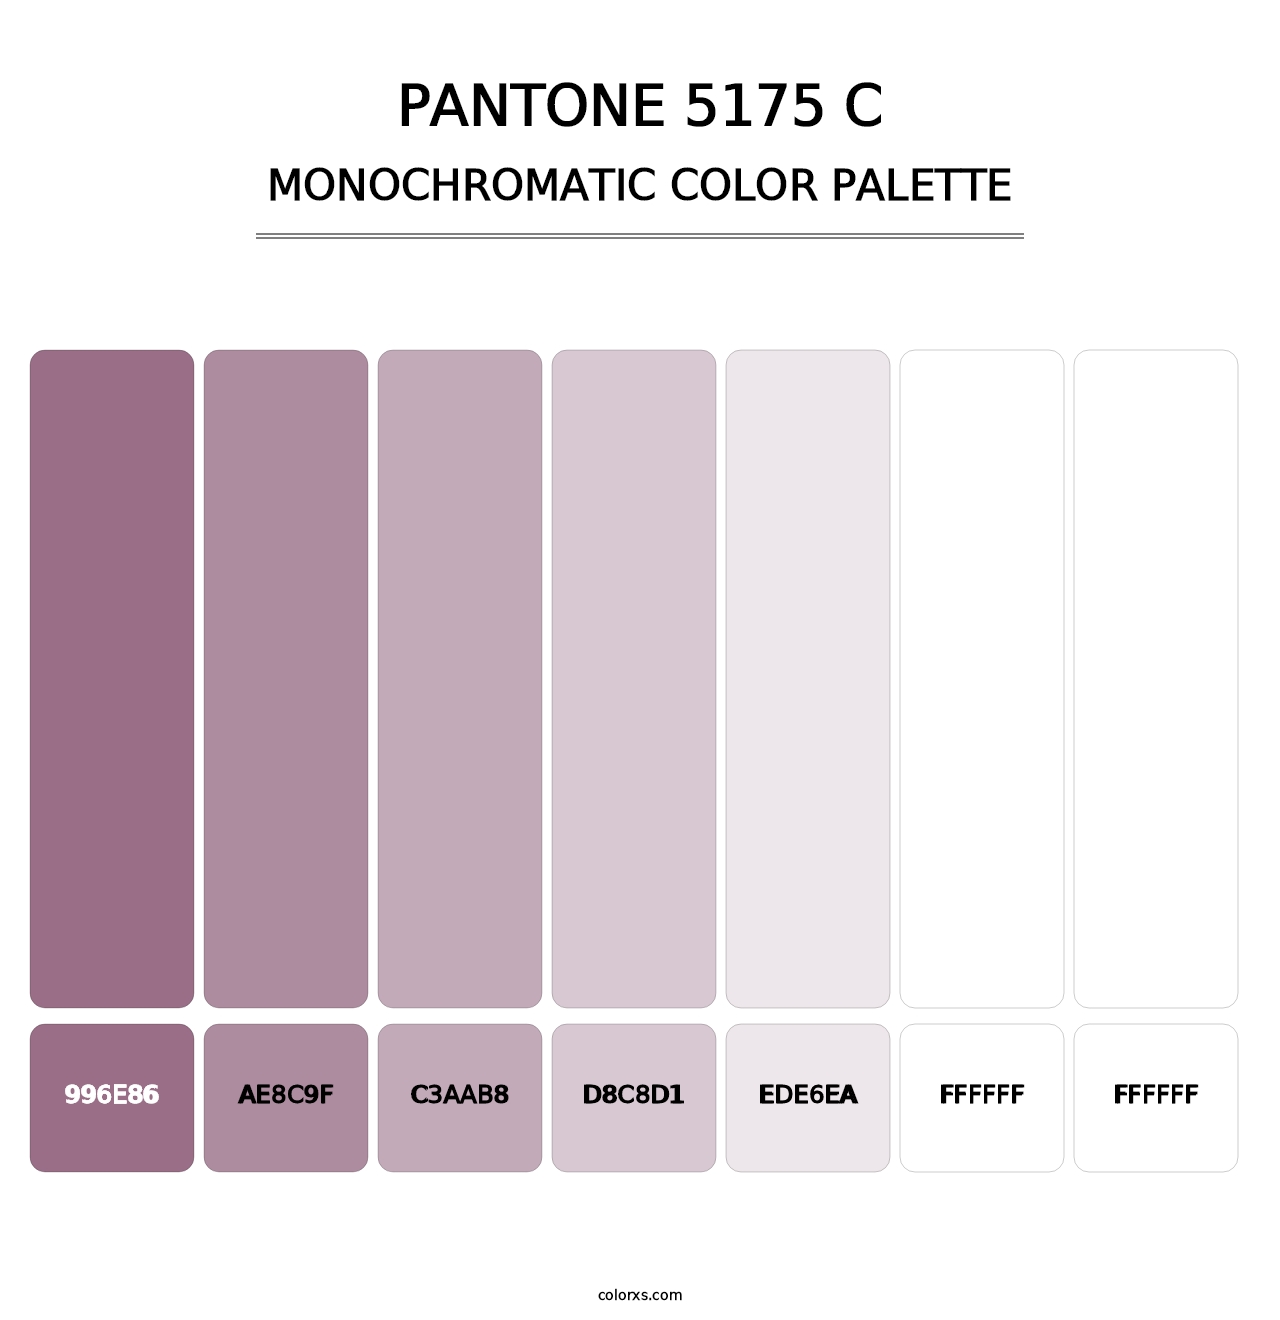 PANTONE 5175 C - Monochromatic Color Palette